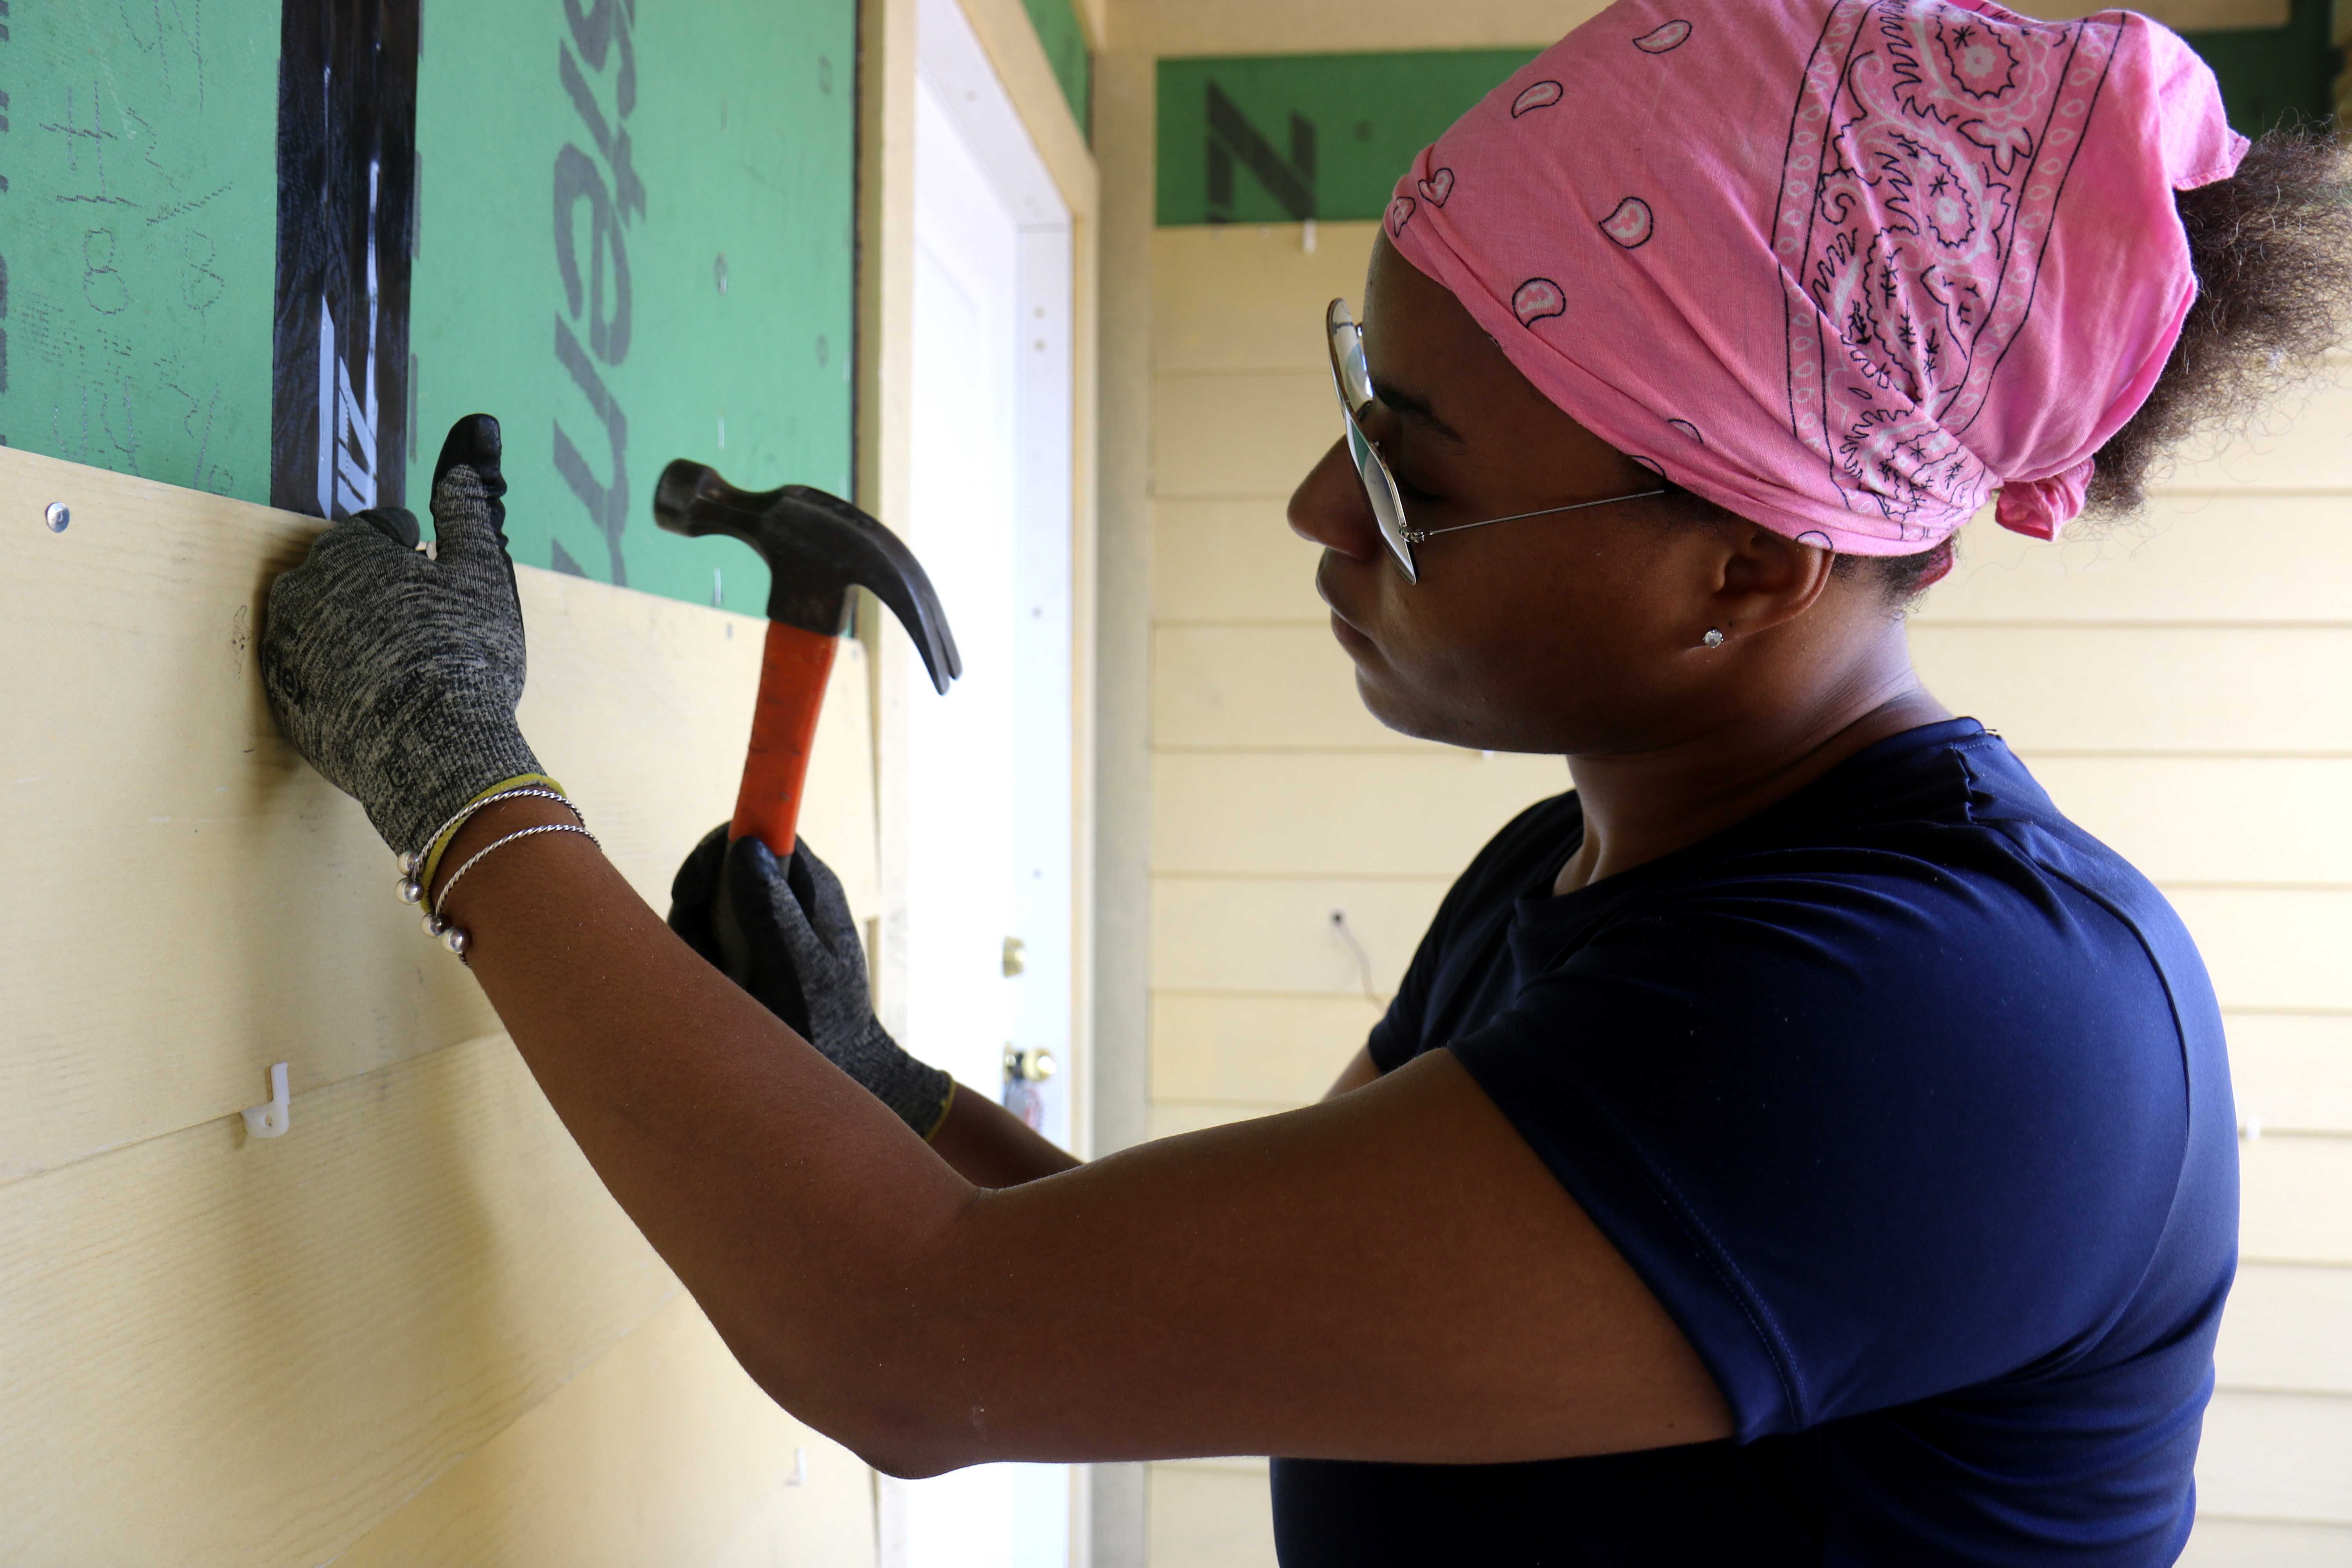 Voluntário usando uma bandana rosa segurando um martelo para instalar o revestimento em uma casa em andamento